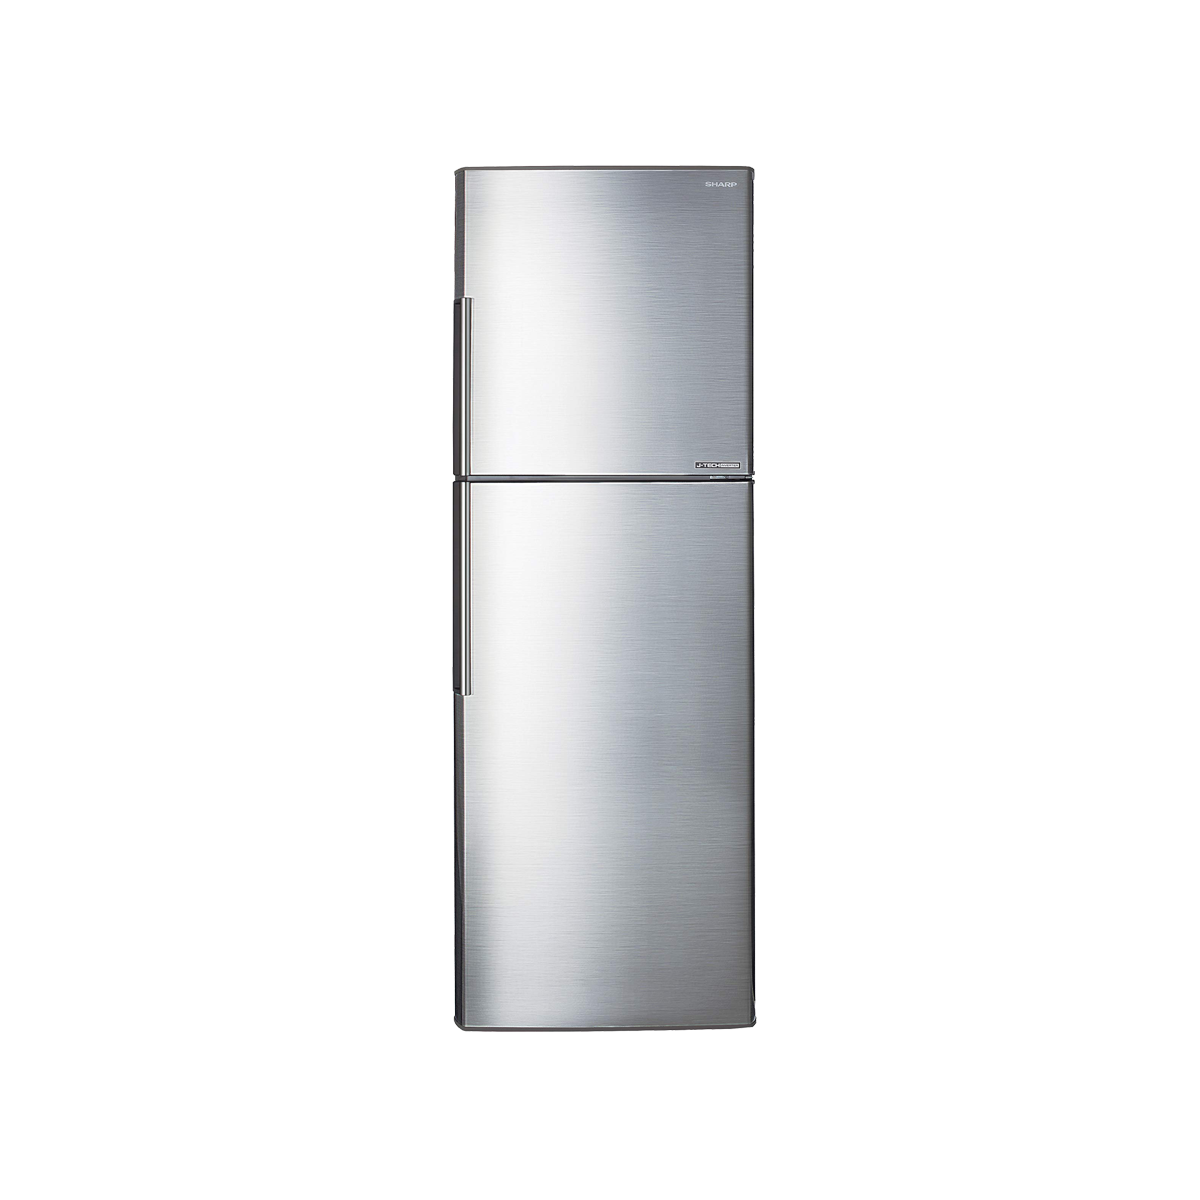 Sharp Refrigerator 304L